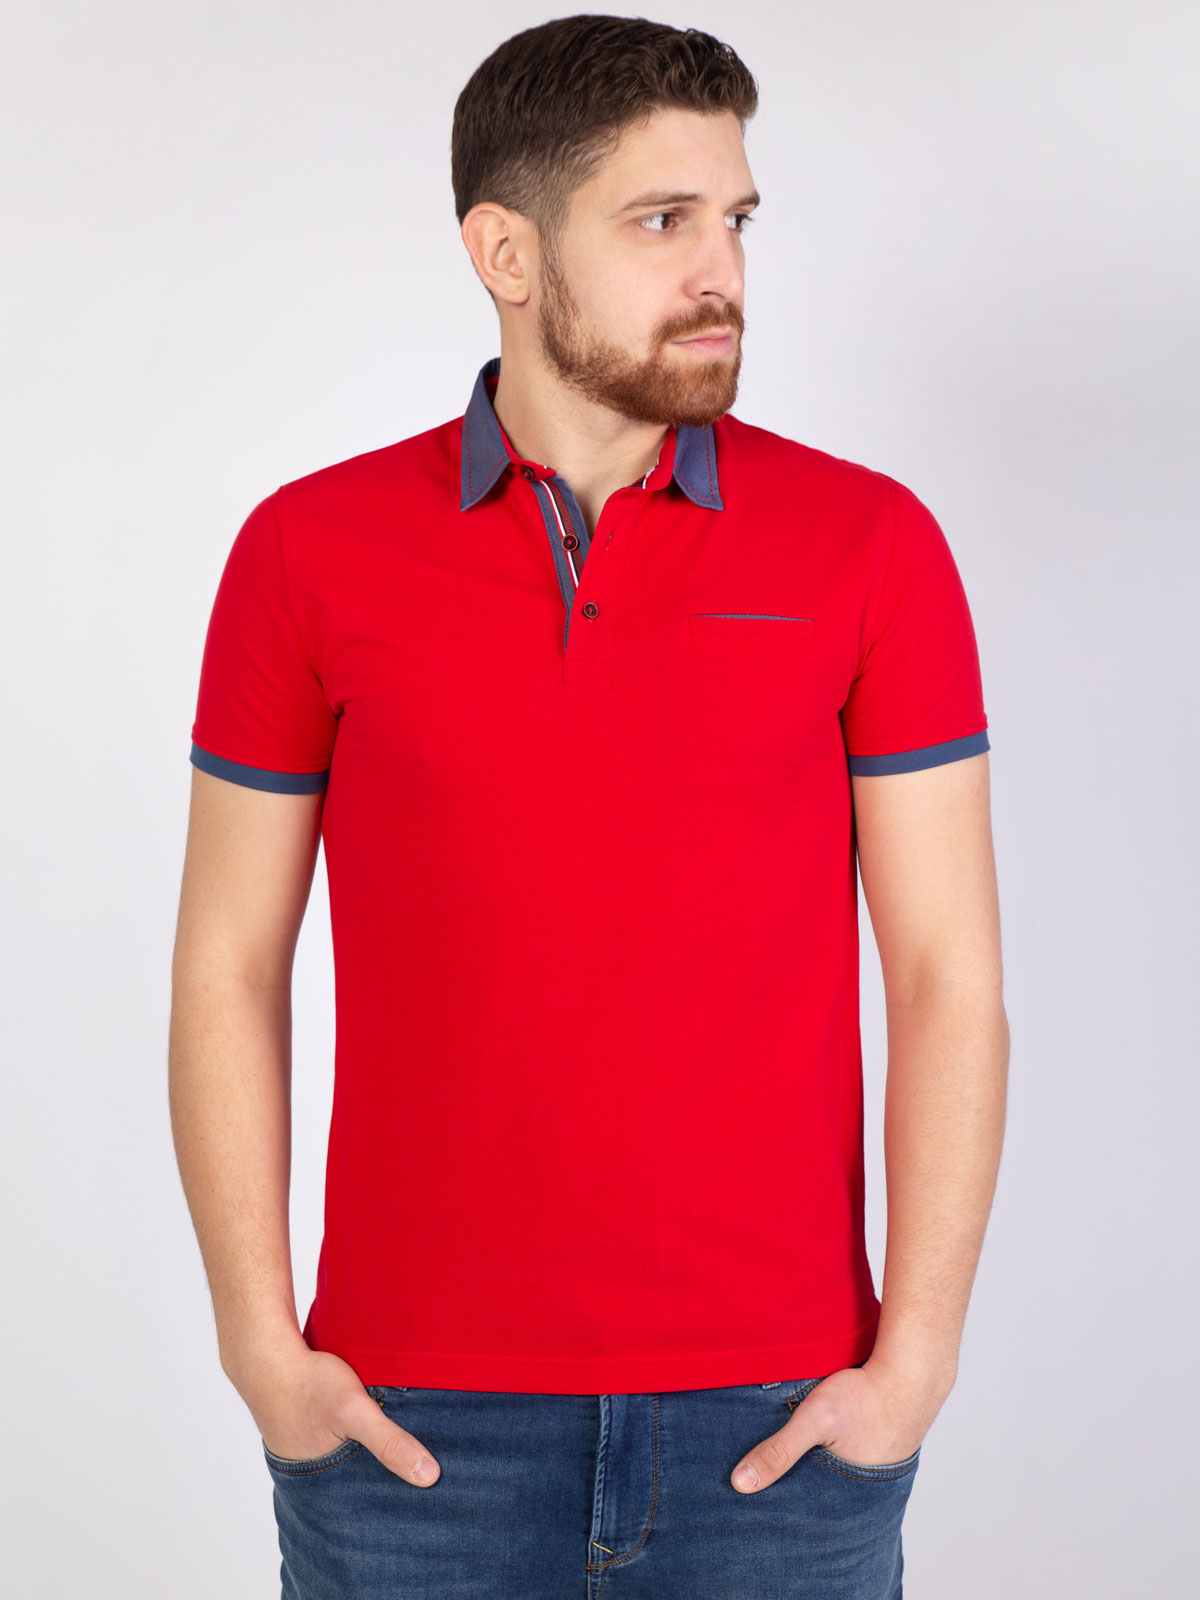  κόκκινη μπλούζα με τζιν γιακά  - 93402 € 25.87 img3